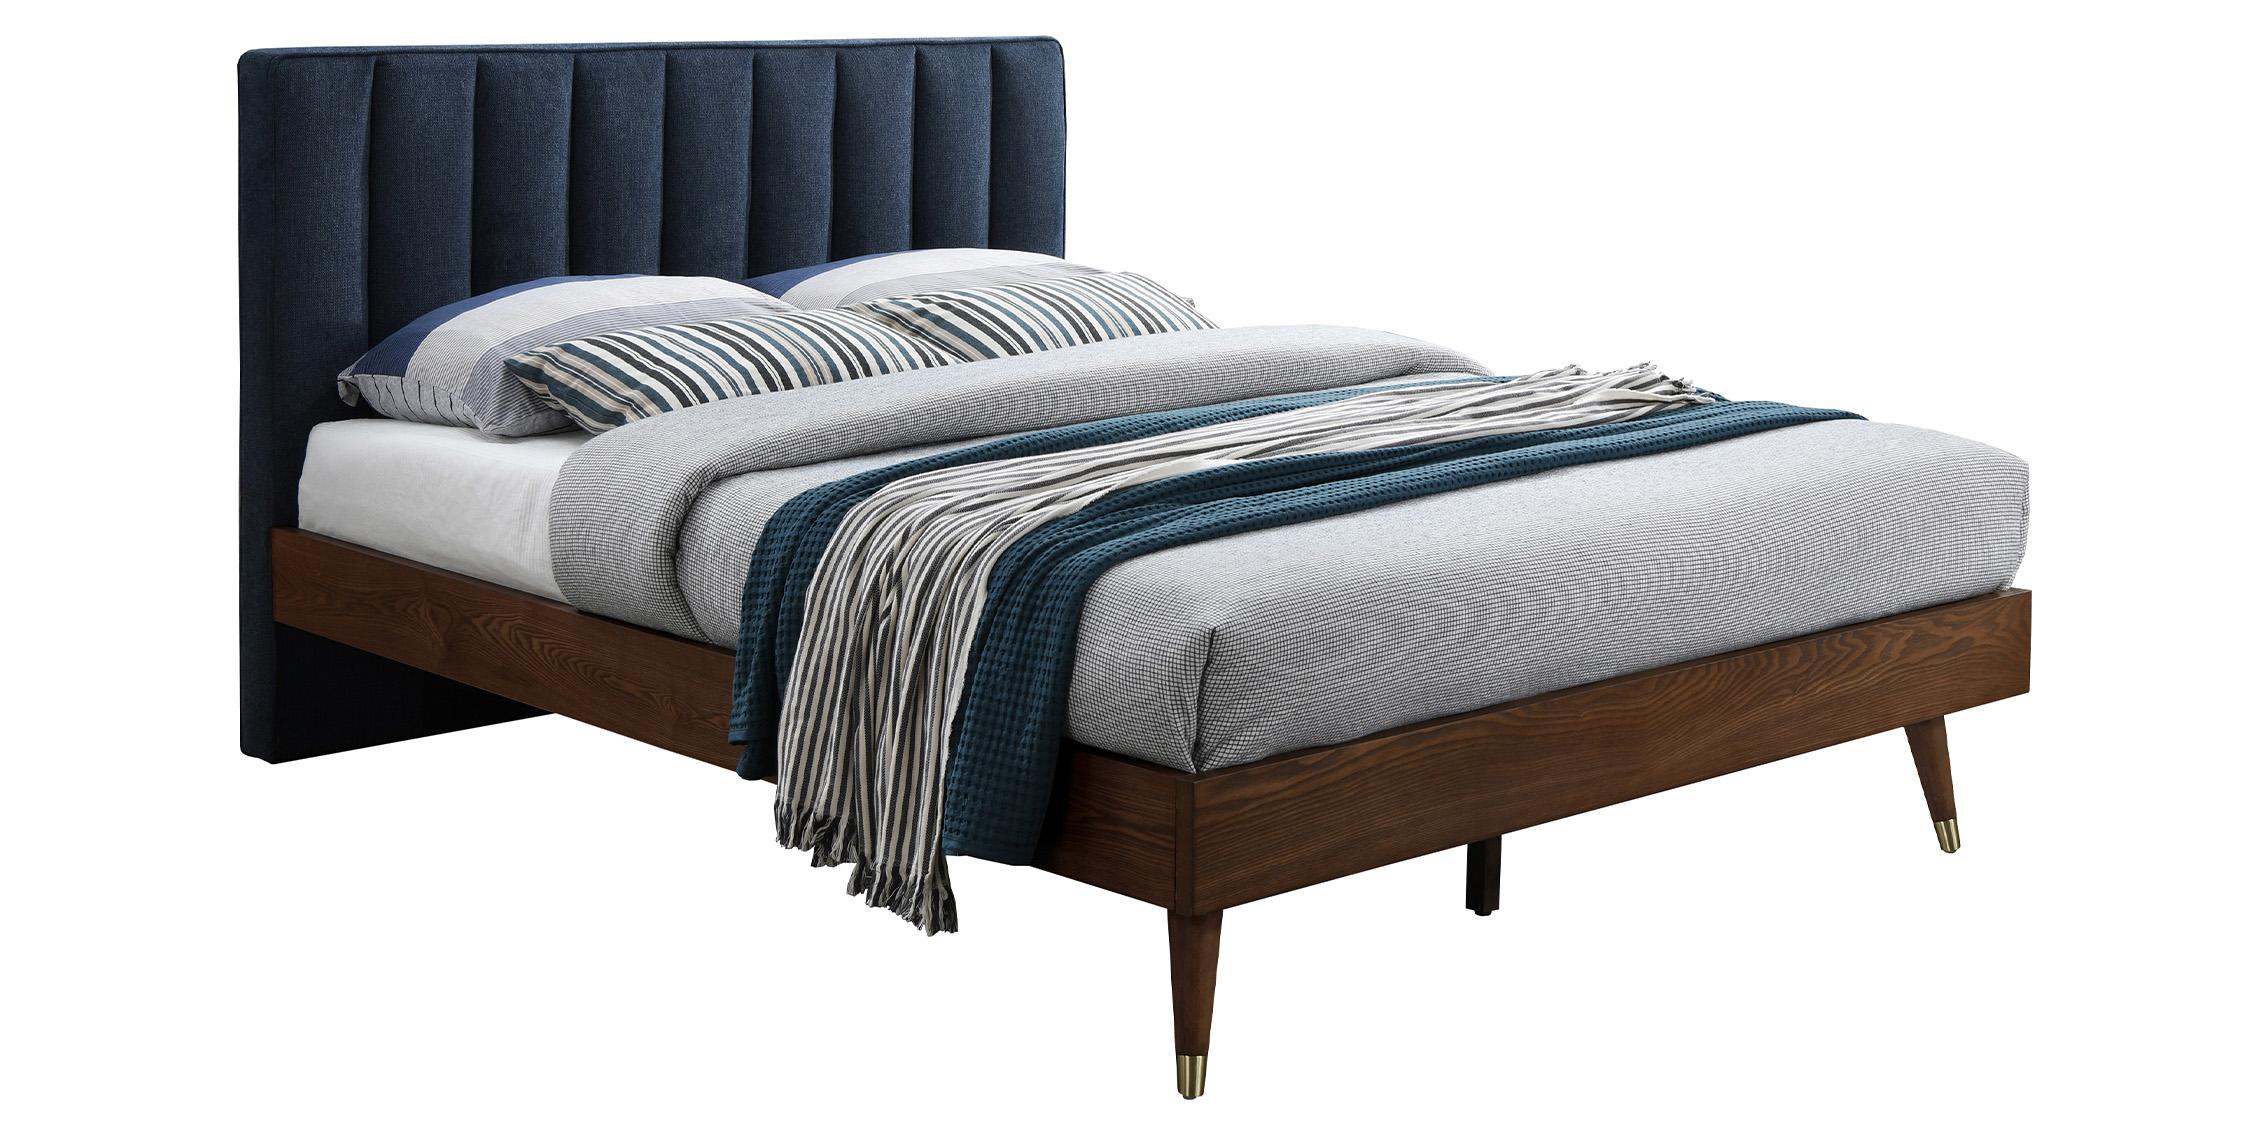 Contemporary, Modern Platform Bed VANCE Navy-K VanceNavy-K in Navy, Walnut Fabric